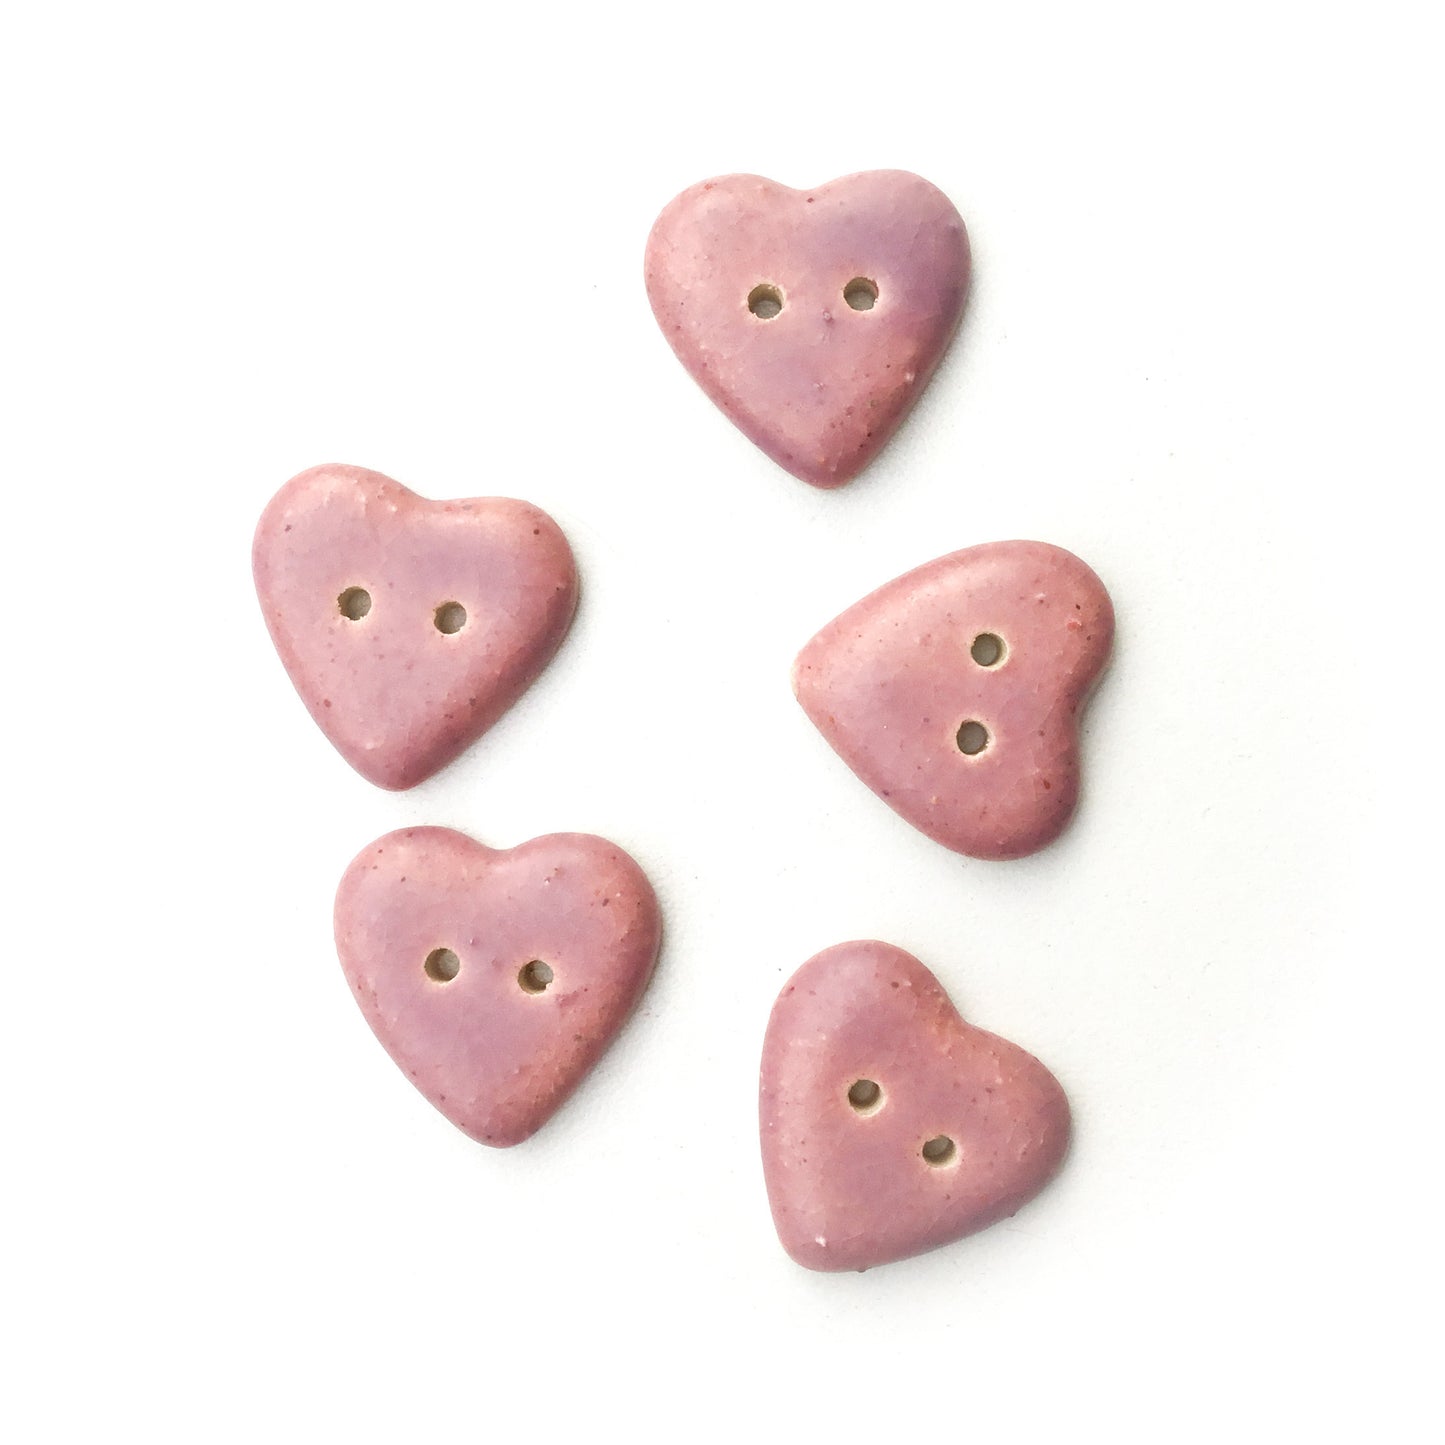 Matte Purple Heart Buttons - Ceramic Heart Buttons - 7/8" - 5 pack